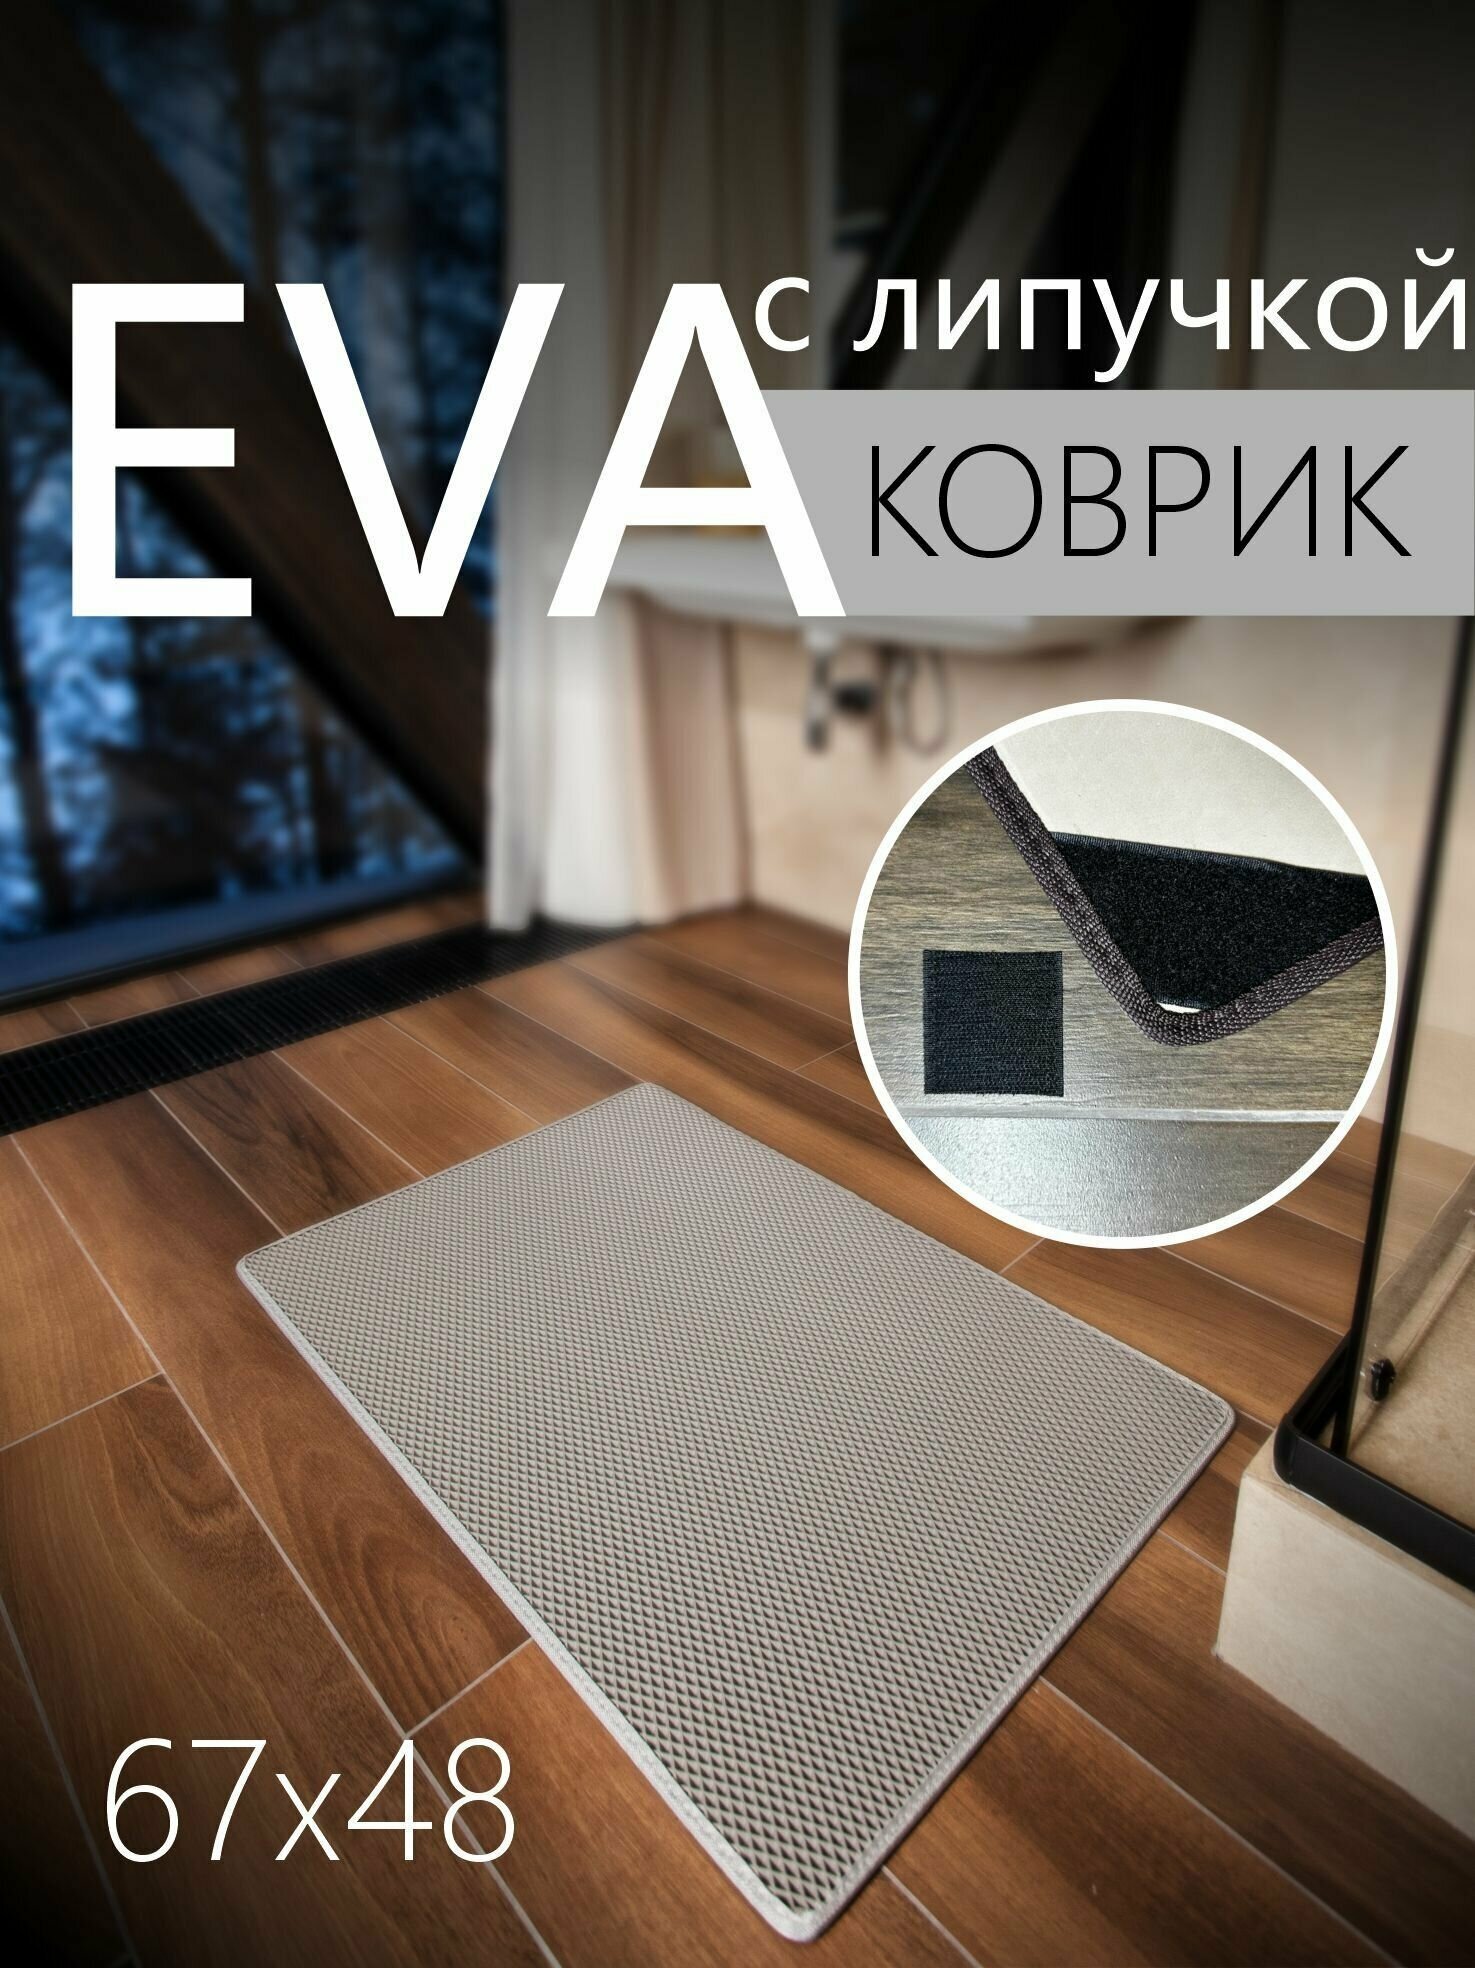 Коврик придверный противоскользящий EVA ЭВА универсальный 67х48 сантиметров. Липучки для фиксации. Ромб Серый со светло-серой окантовкой